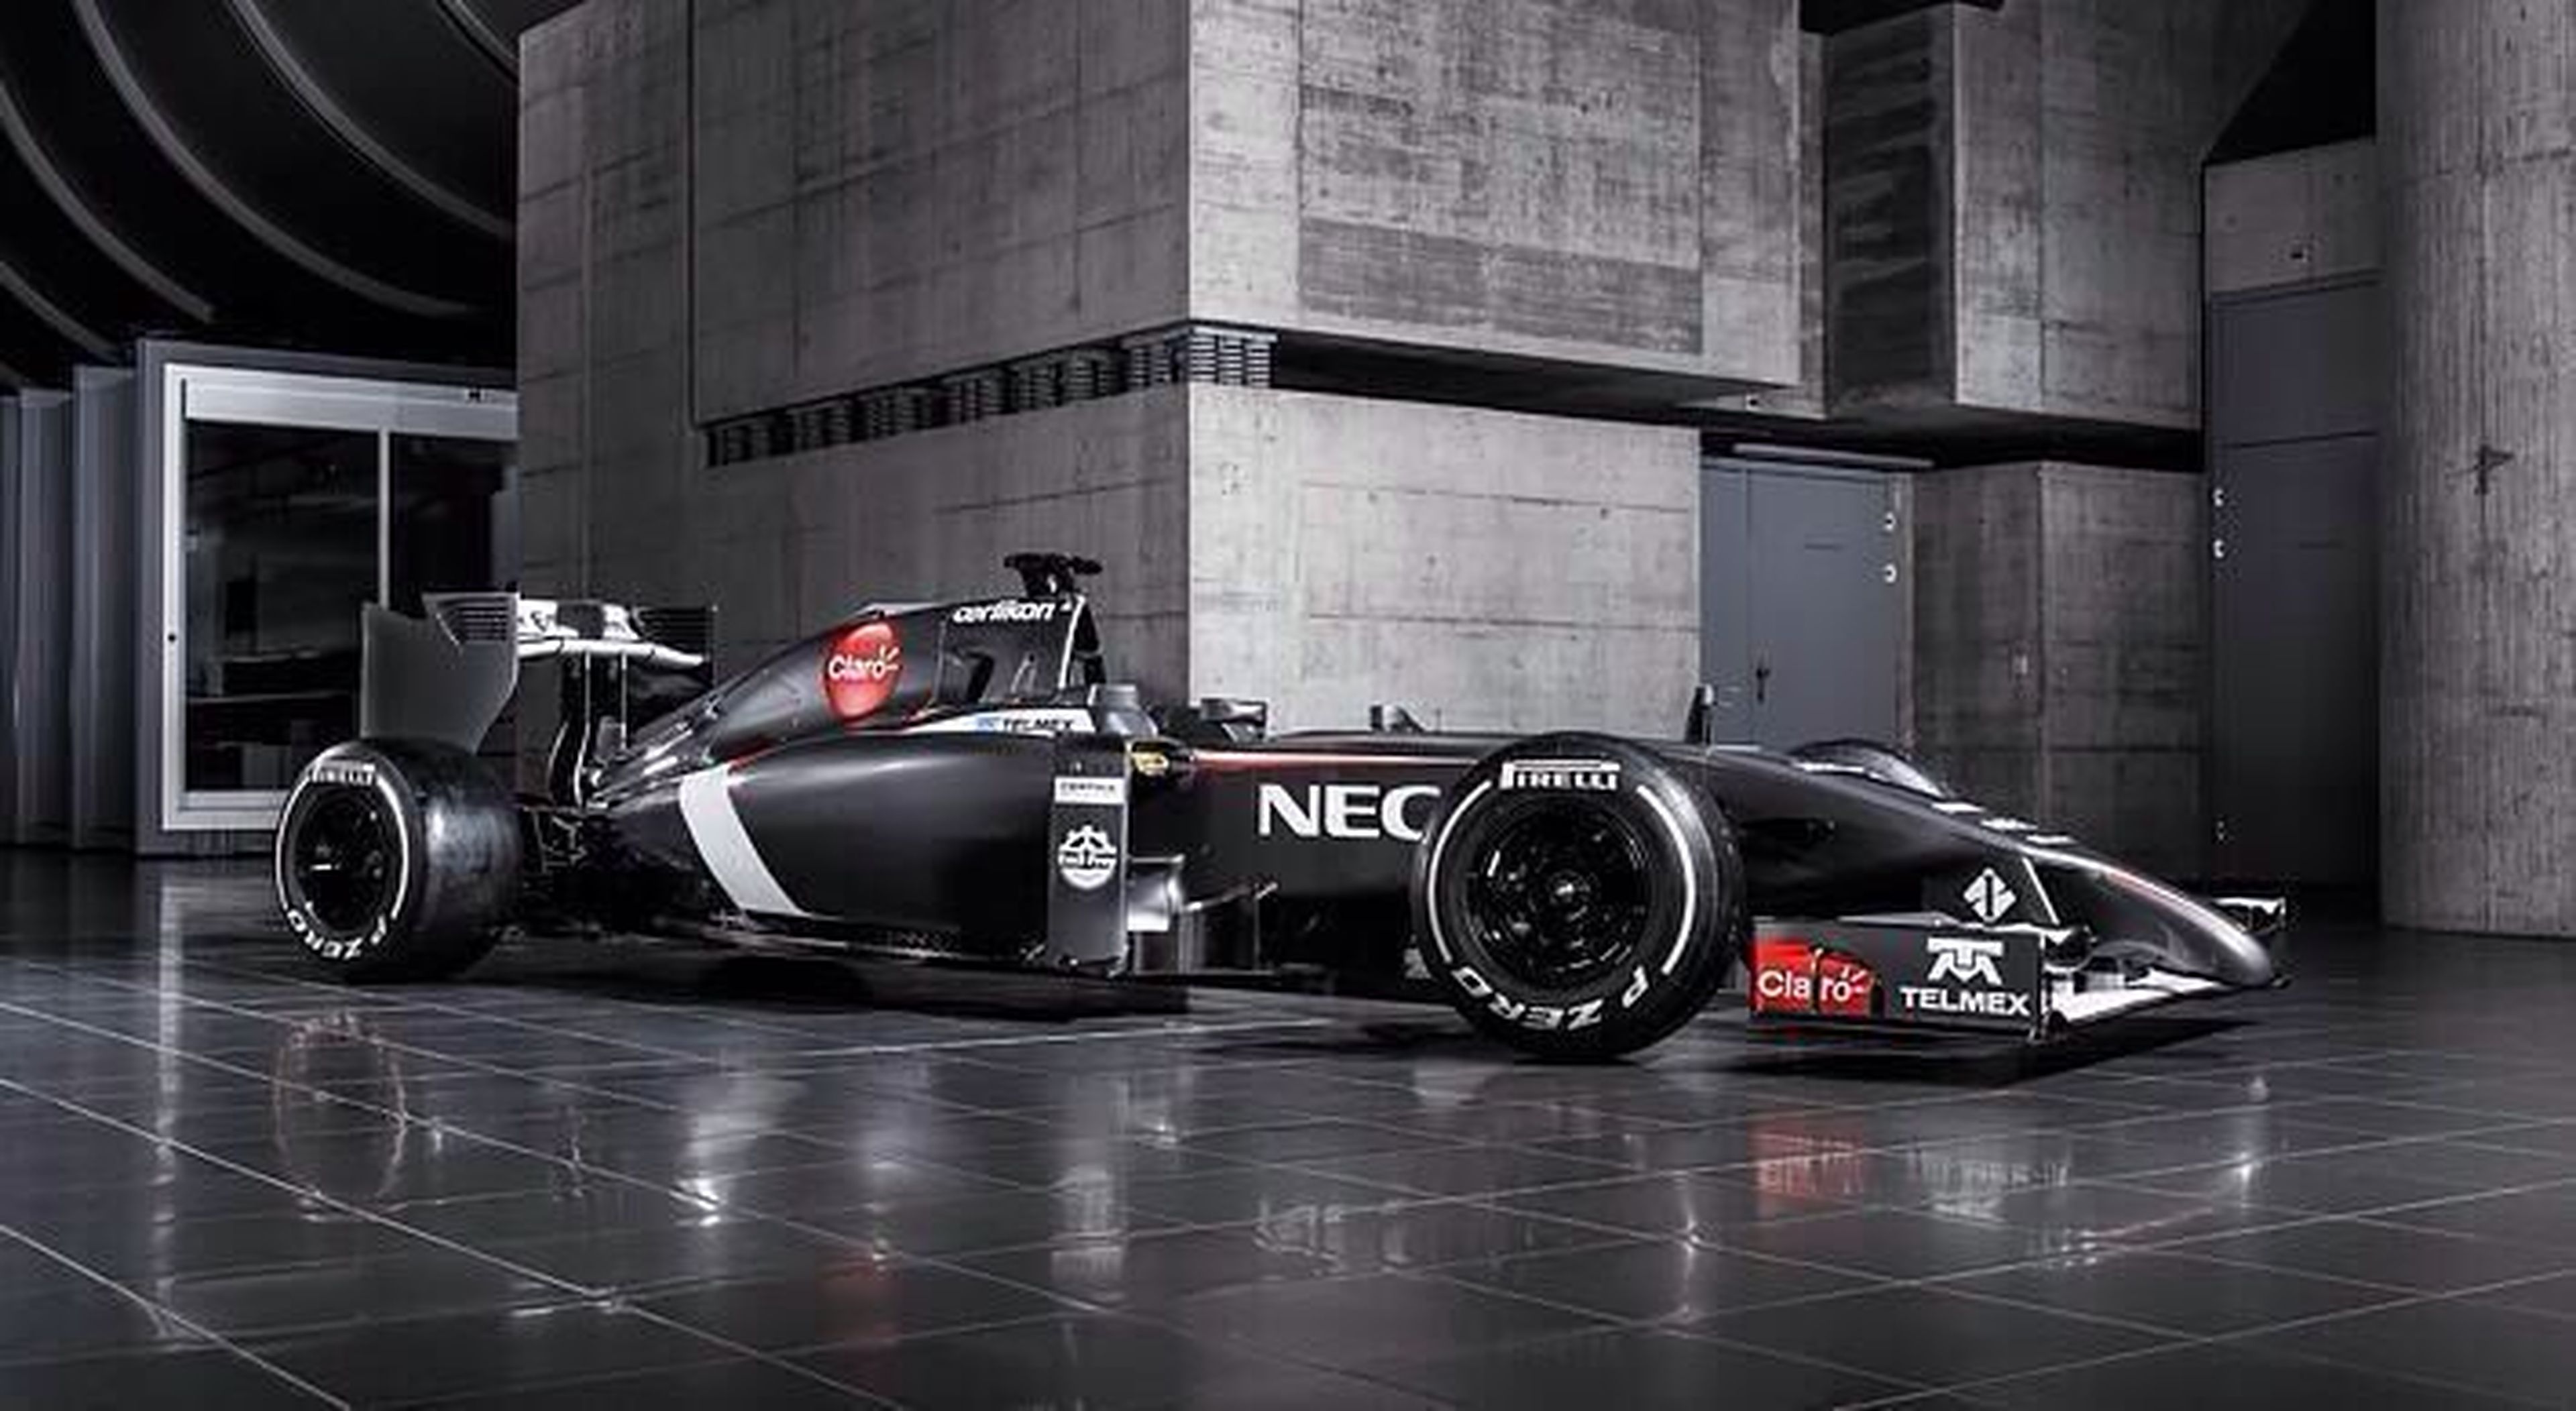 Nuevo Sauber C33 de Fórmula 1 para 2014, primera imagen